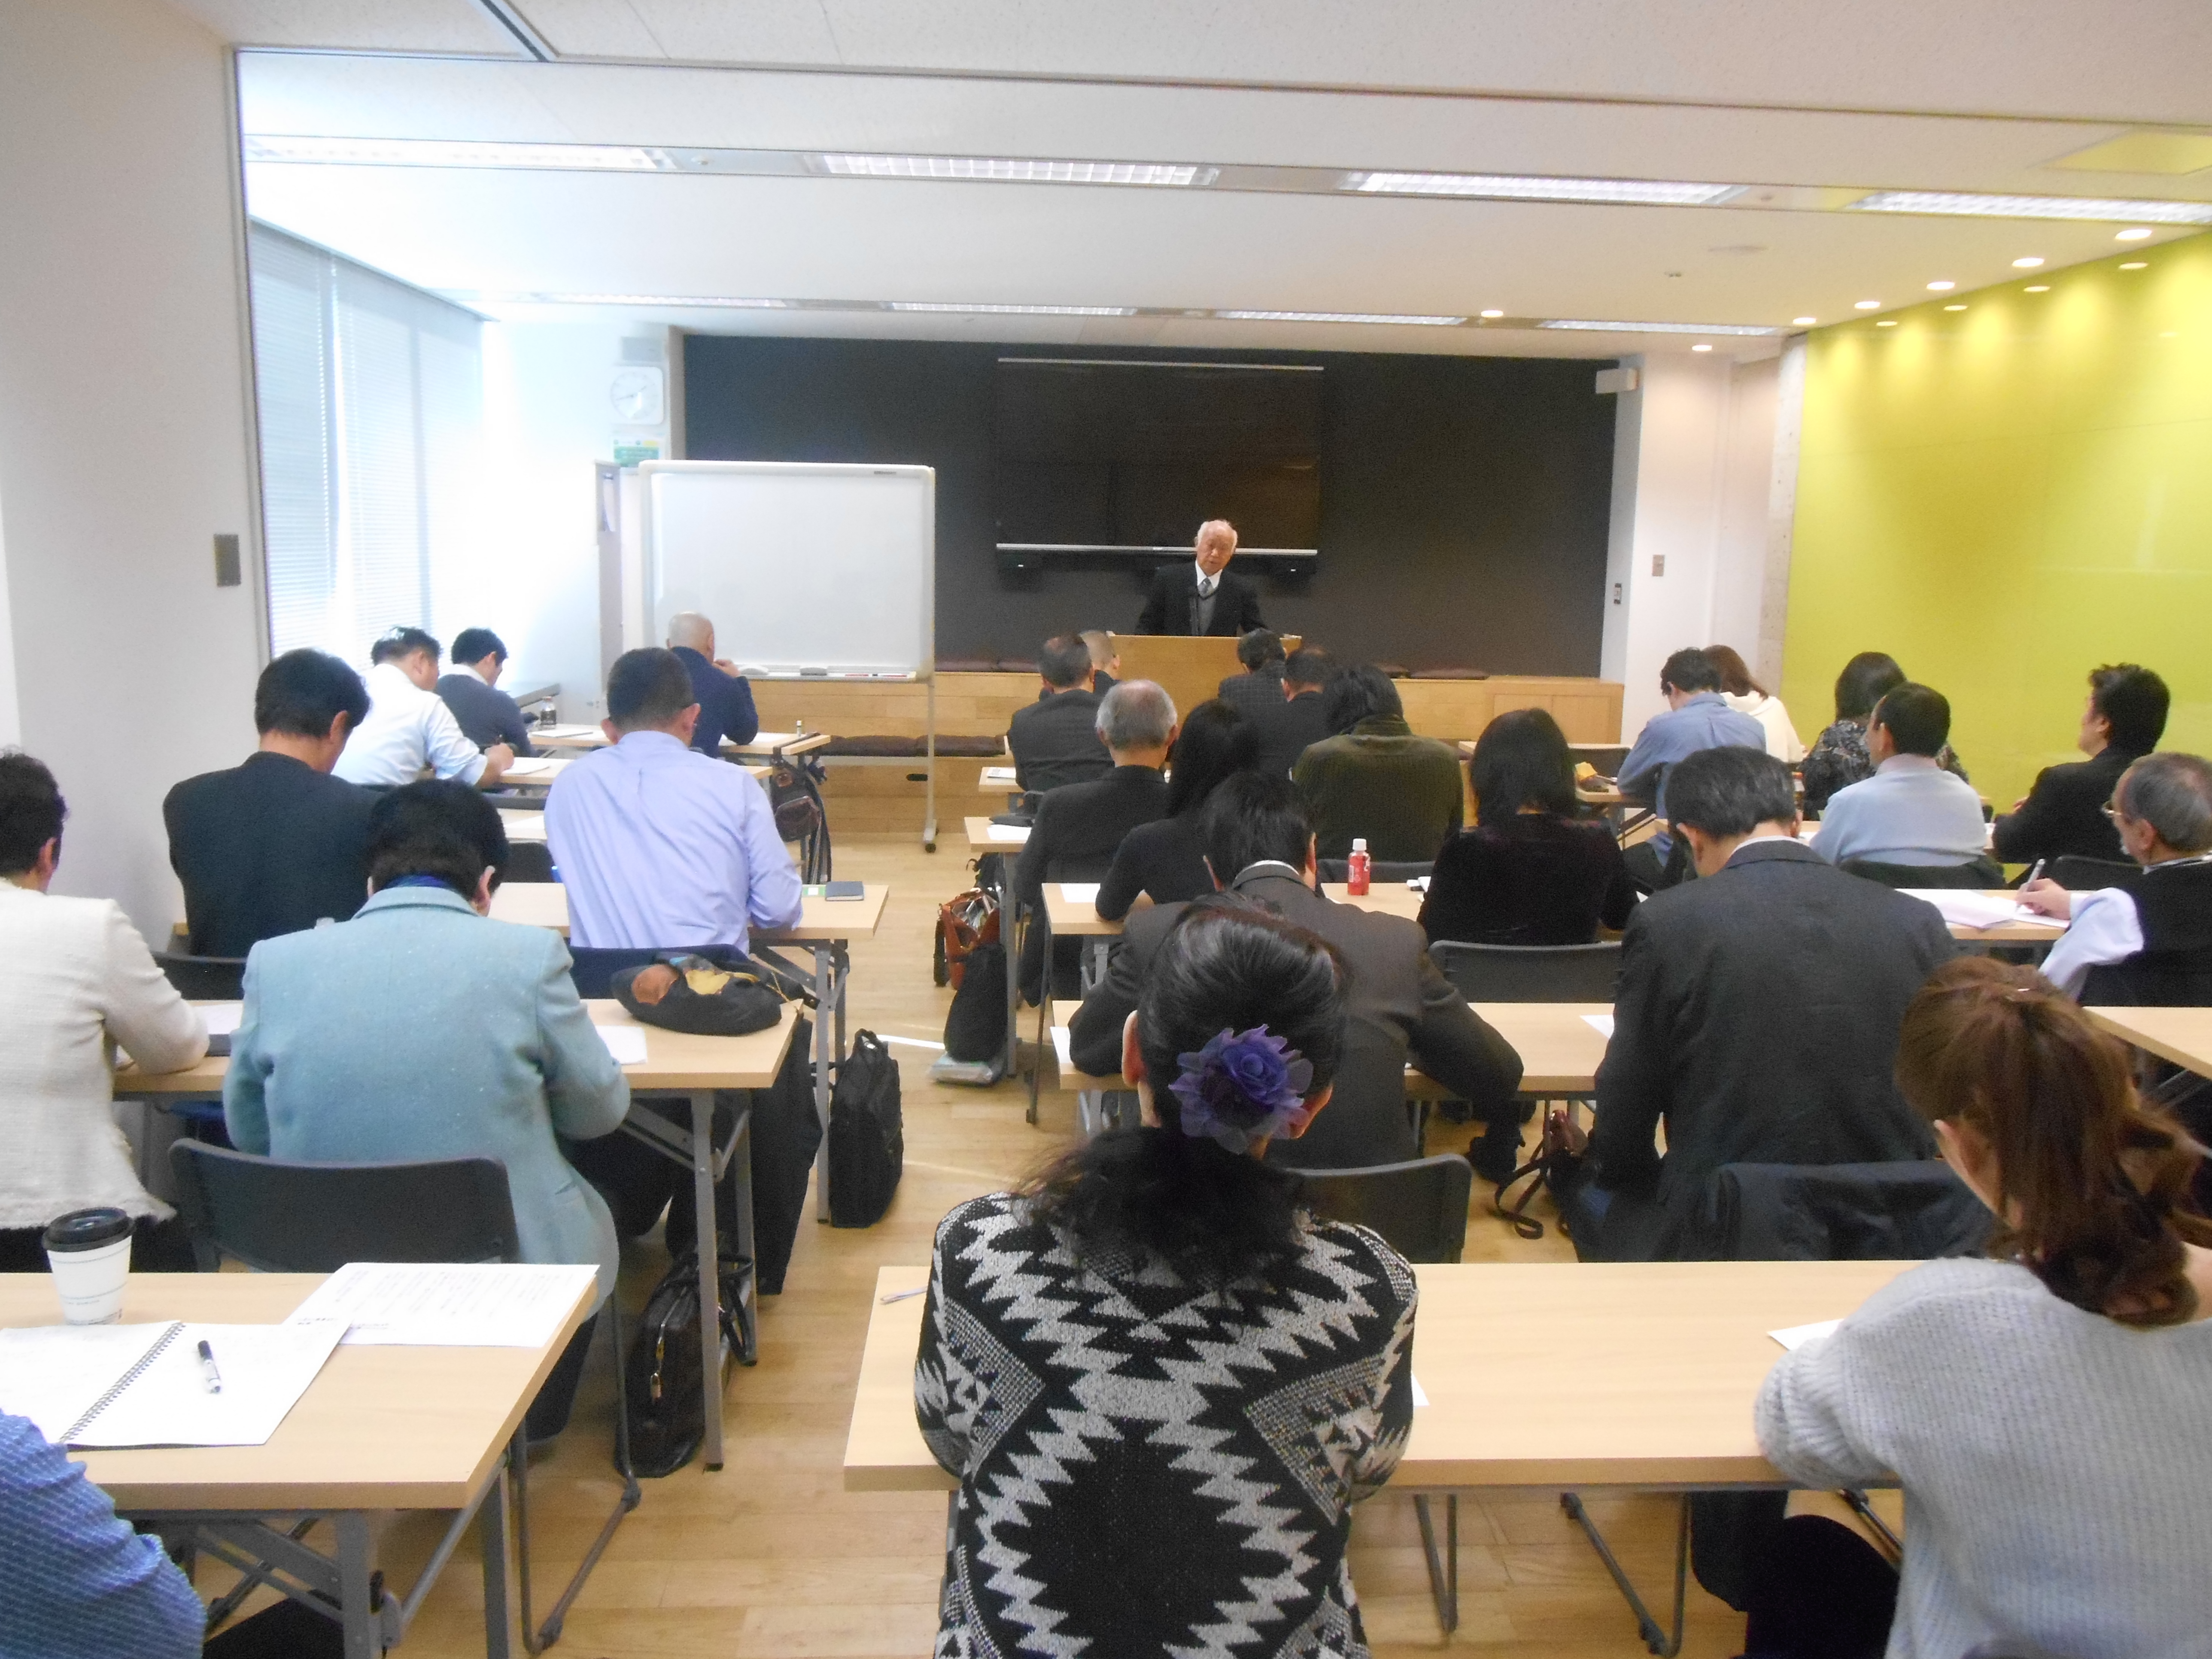 DSCN0046 - 平成29年度 東京思風塾2月4日開催しました。